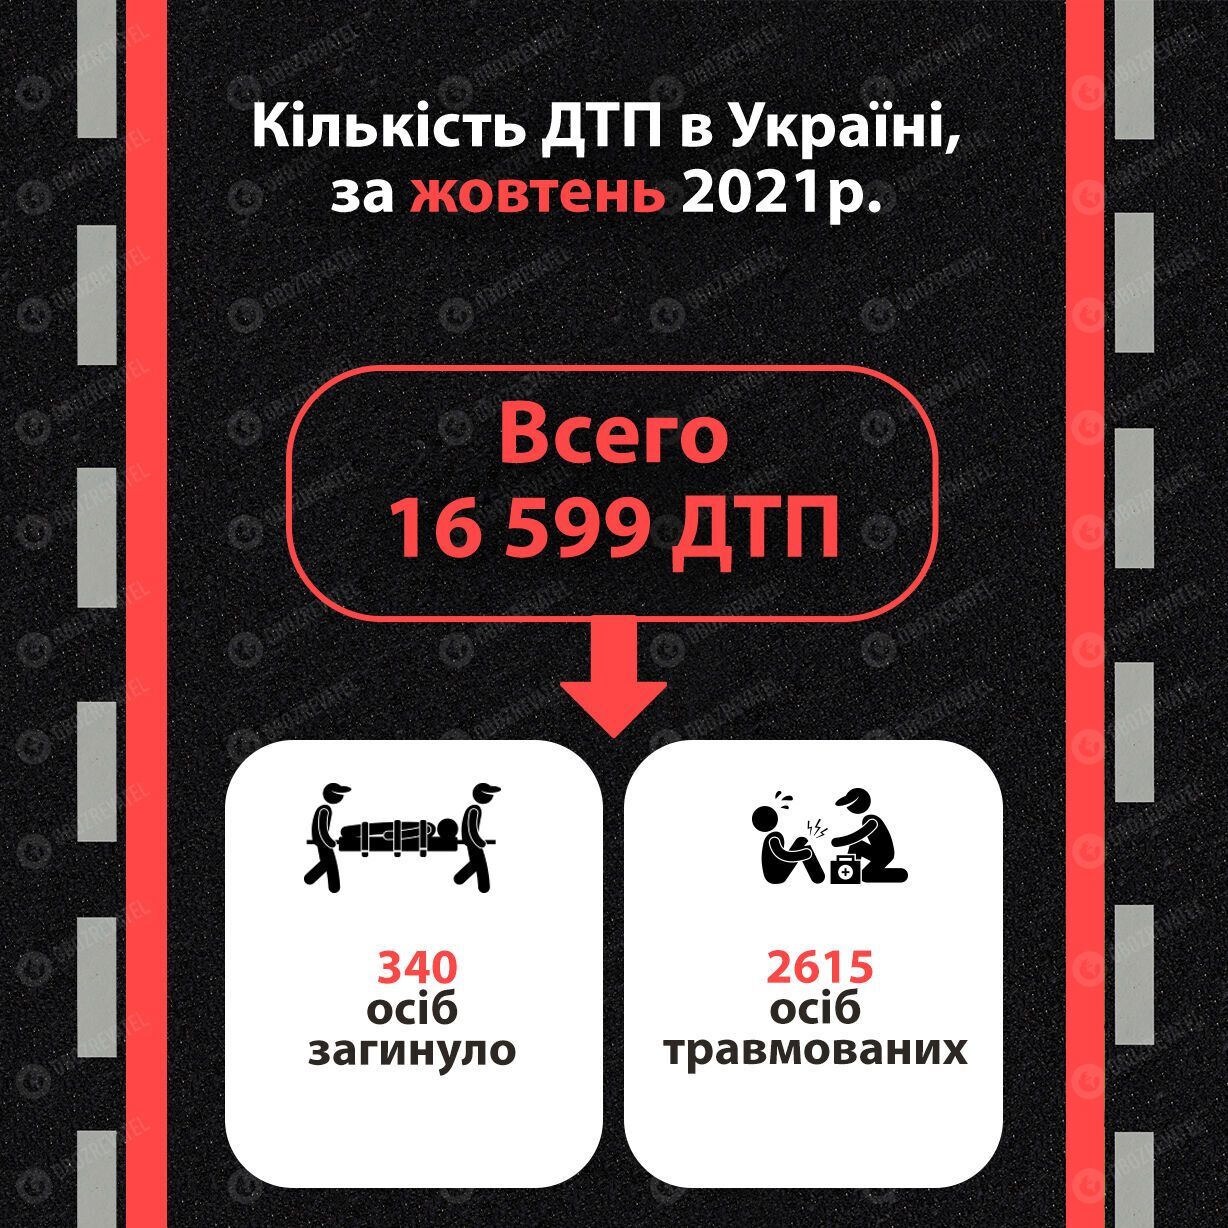 Статистика з ДТП в Україні, дані за жовтень 2021 року